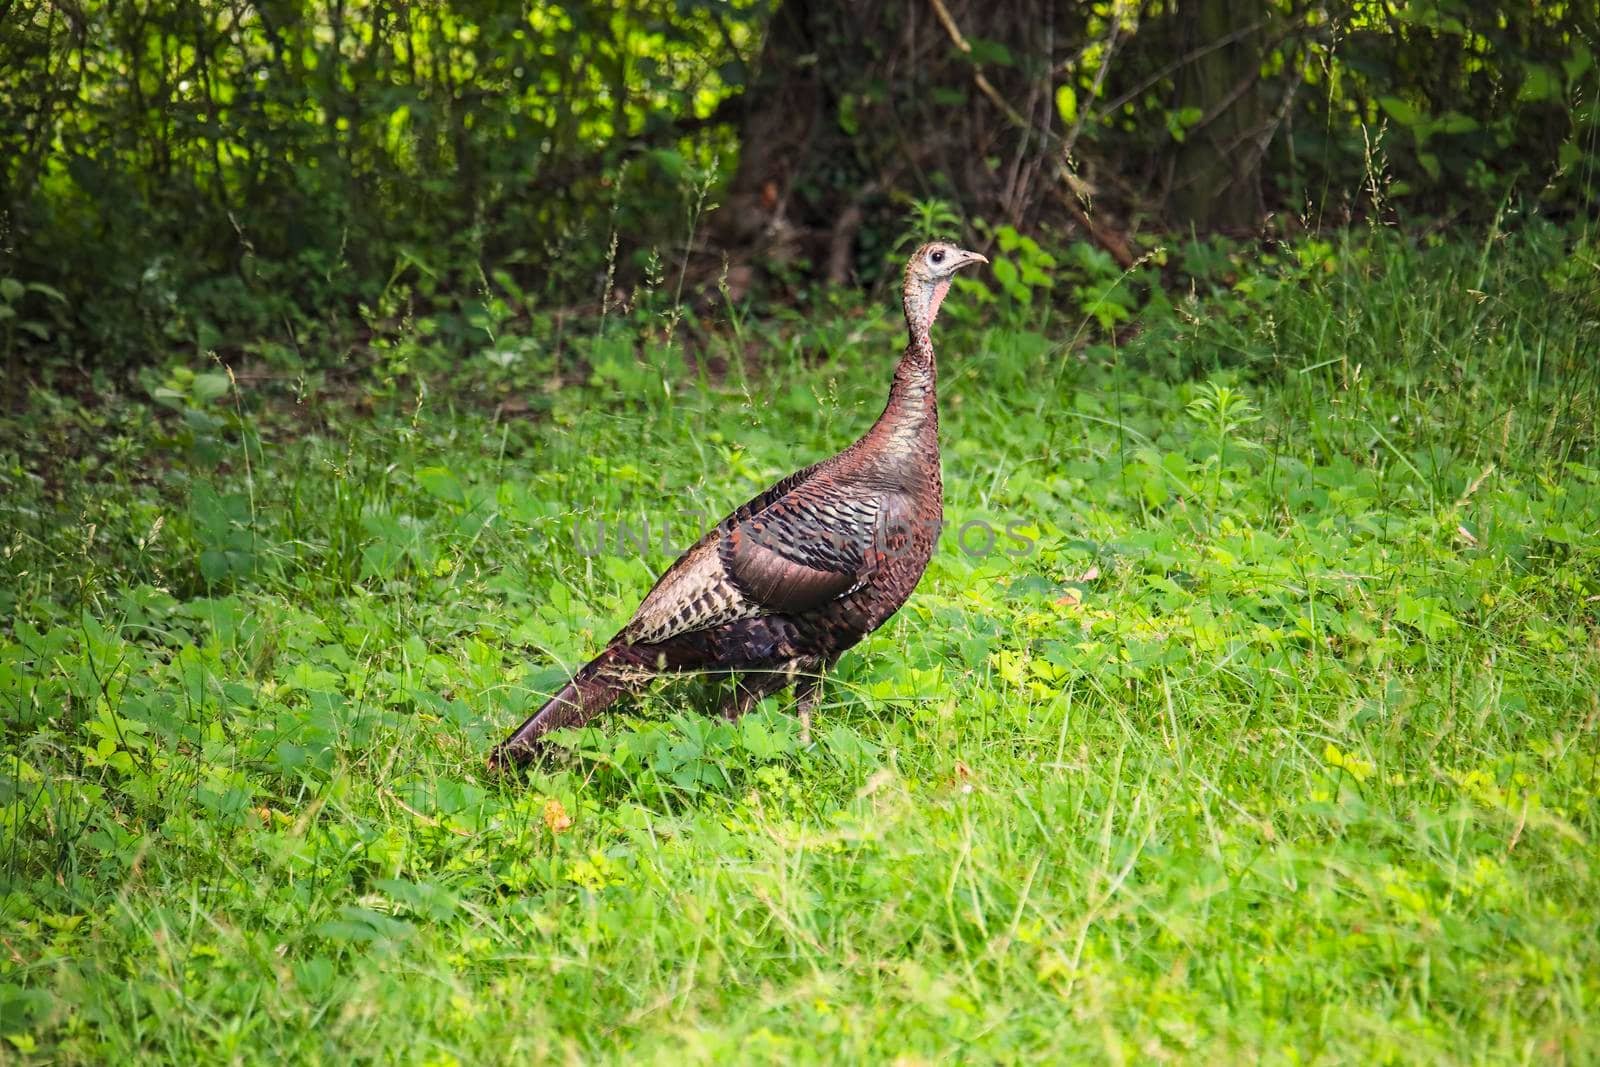 Wild turkey hen foraging through grass.